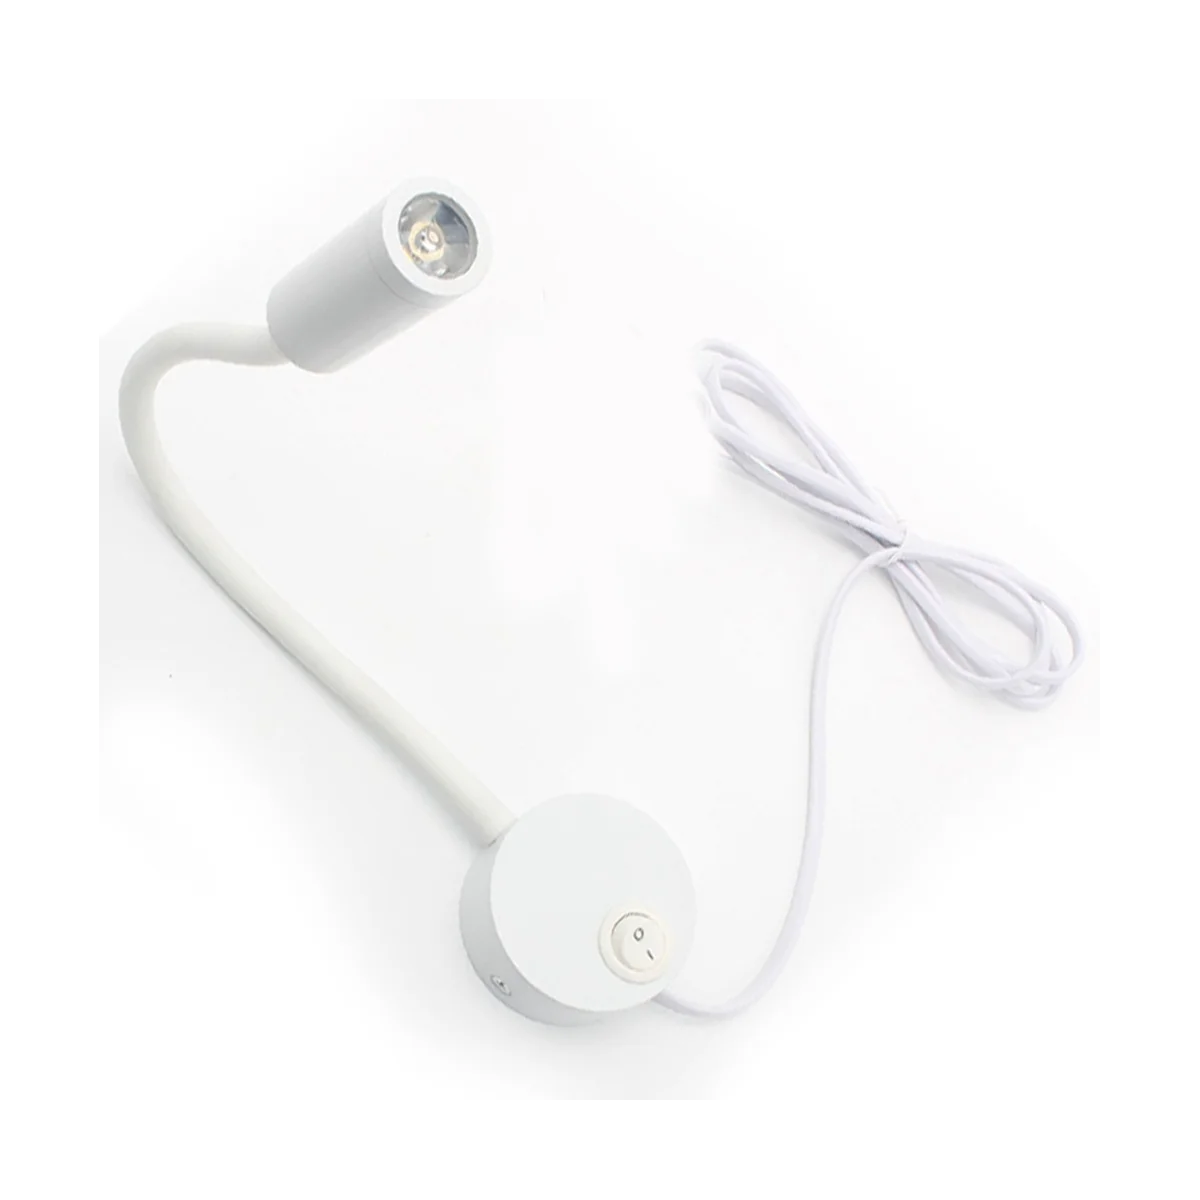 Настенная лампа для чтения, настенный светильник, шланг, прикроватная лампа, переключатель управления, настенный светильник в минималистском стиле (белая штепсельная вилка ЕС) 2